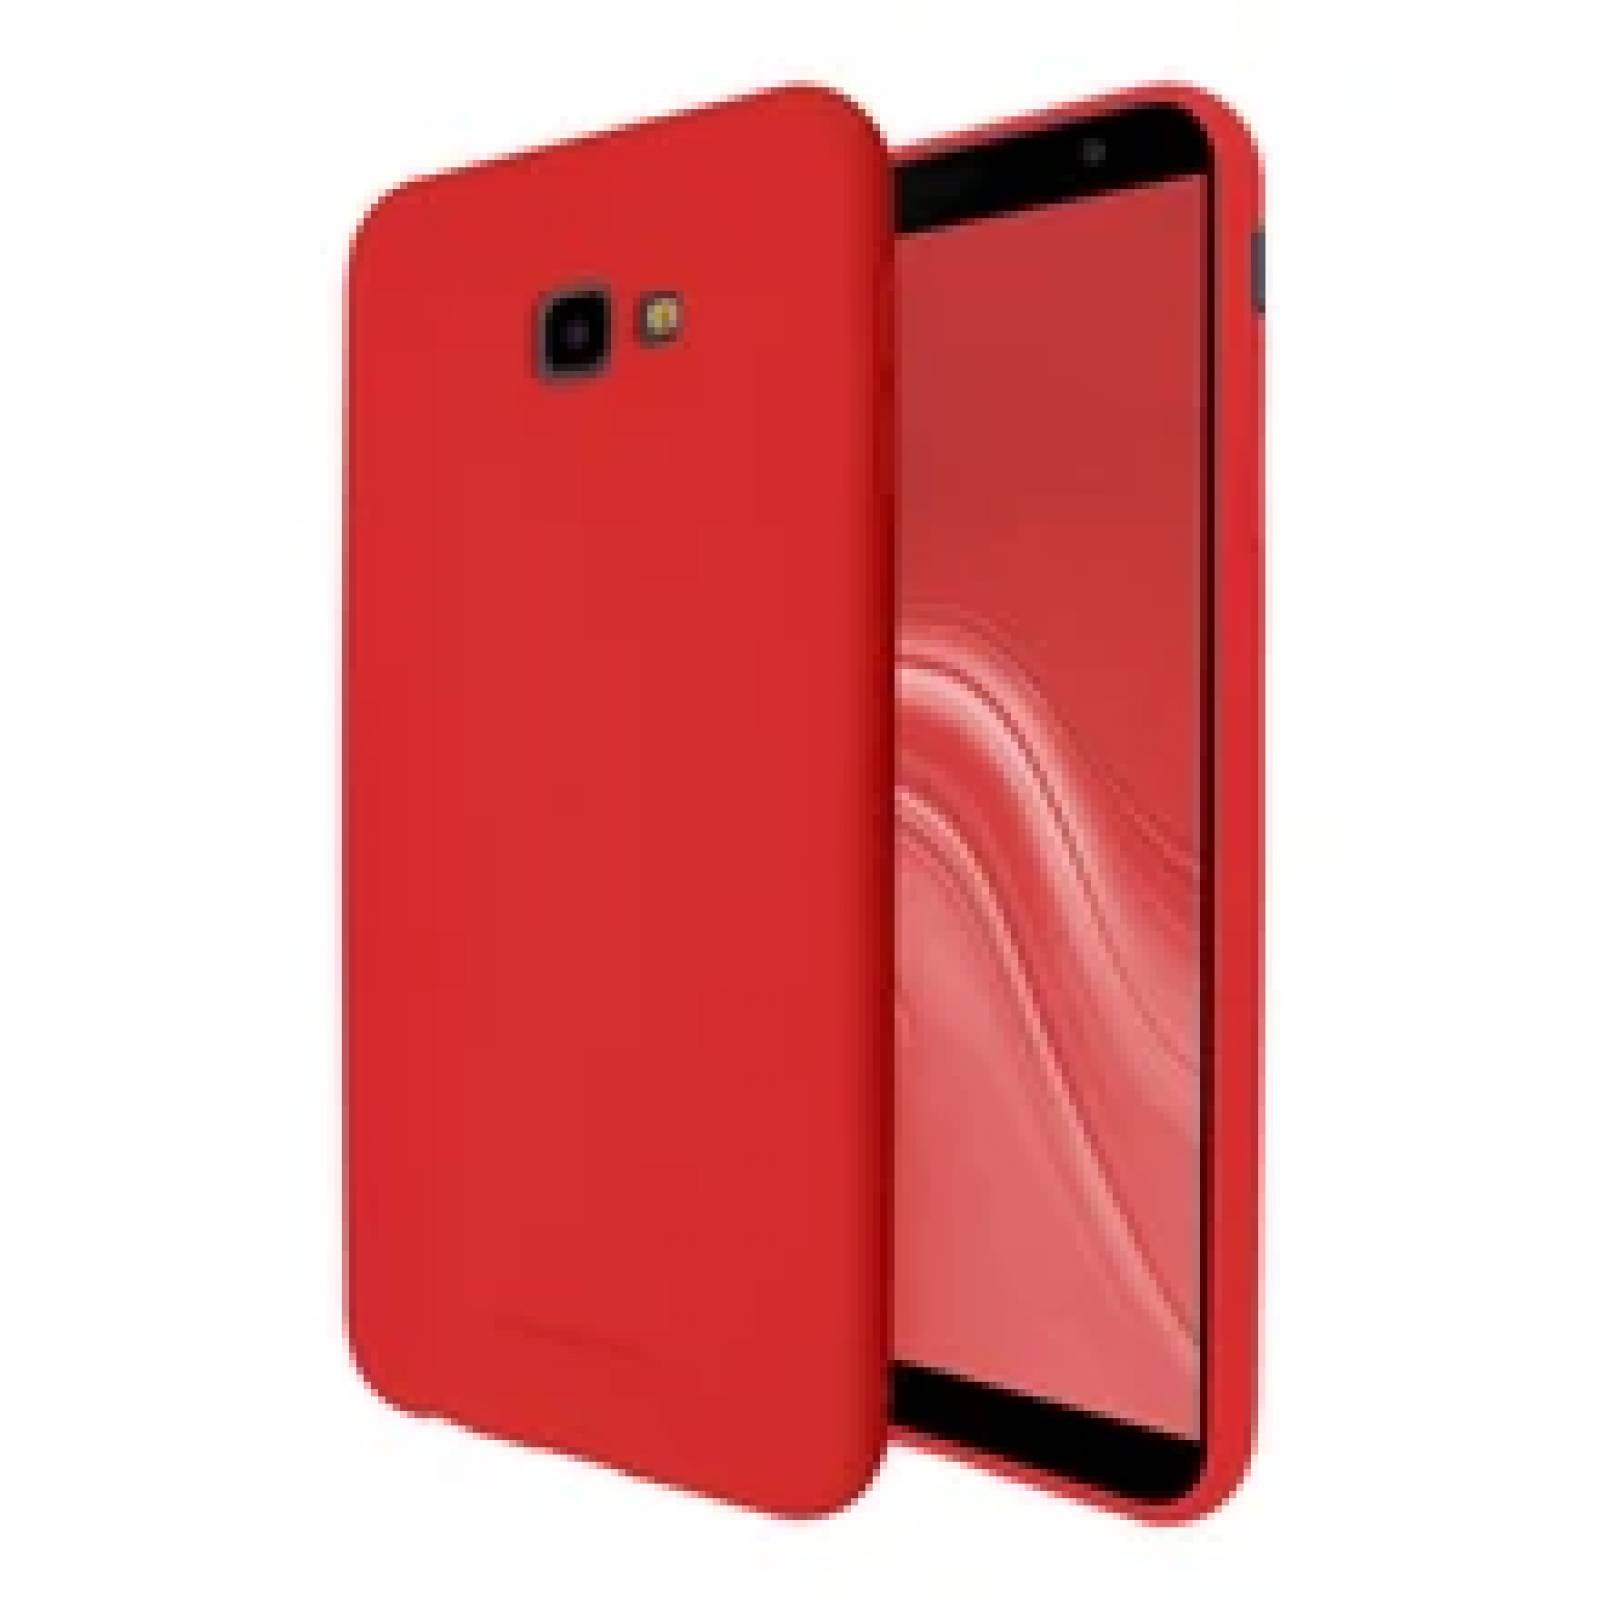 Funda Molan Cano Case De Silicon Suave Para Huawei Mate 20 Lite Rojo